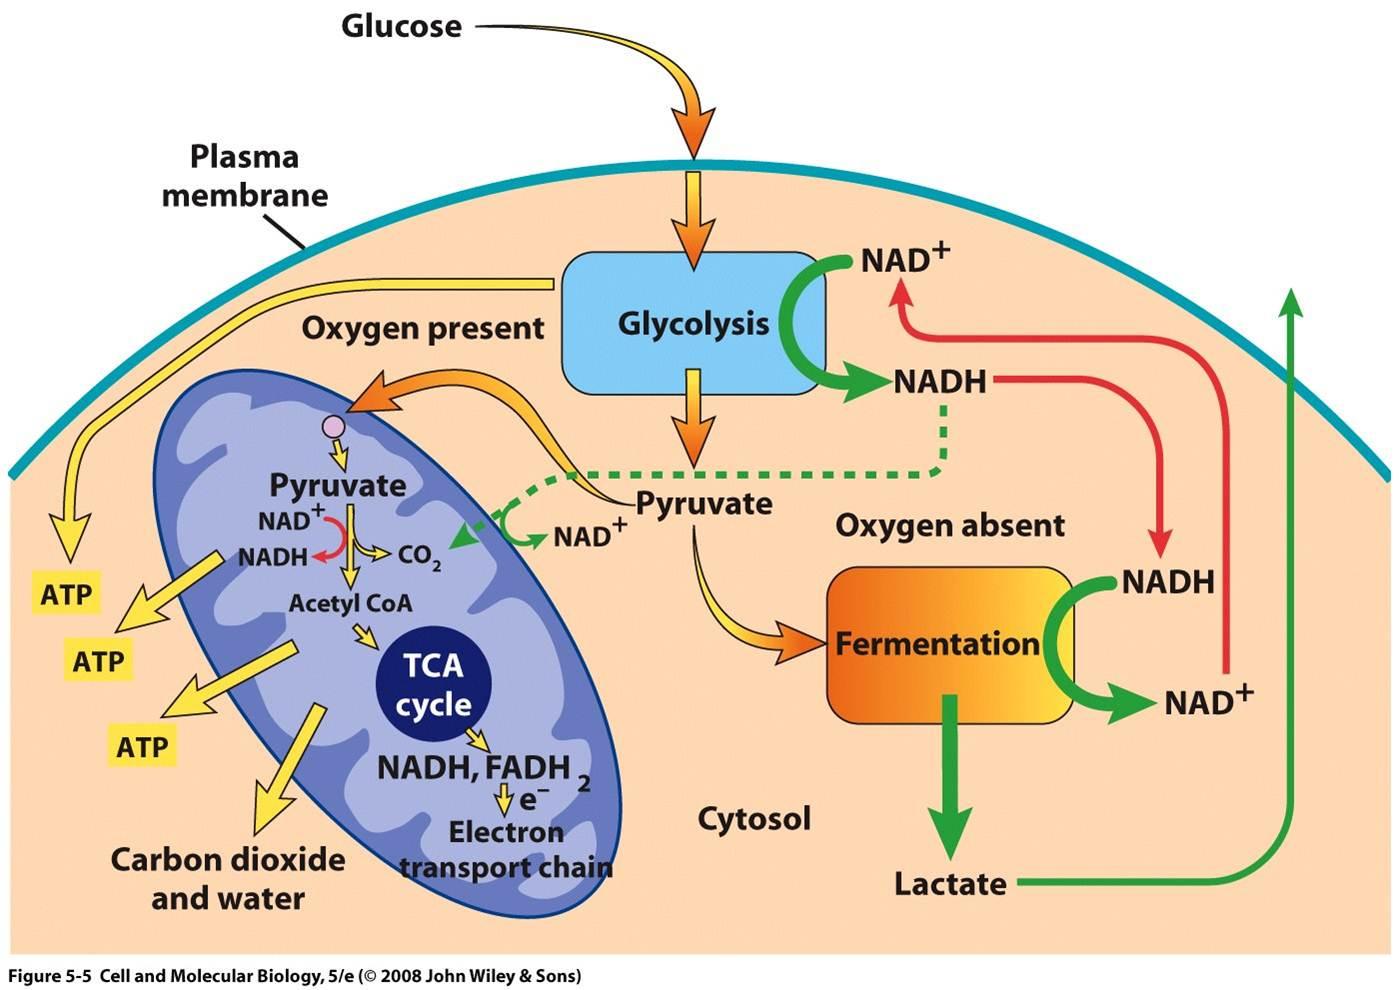 Митохондрии синтезируют атф. Схема клеточного дыхания цикл Кребса. Цикл Кребса схема в митохондриях. Цикл Кребса происходит в митохондриях. Аэробный процесс в митохондриях.